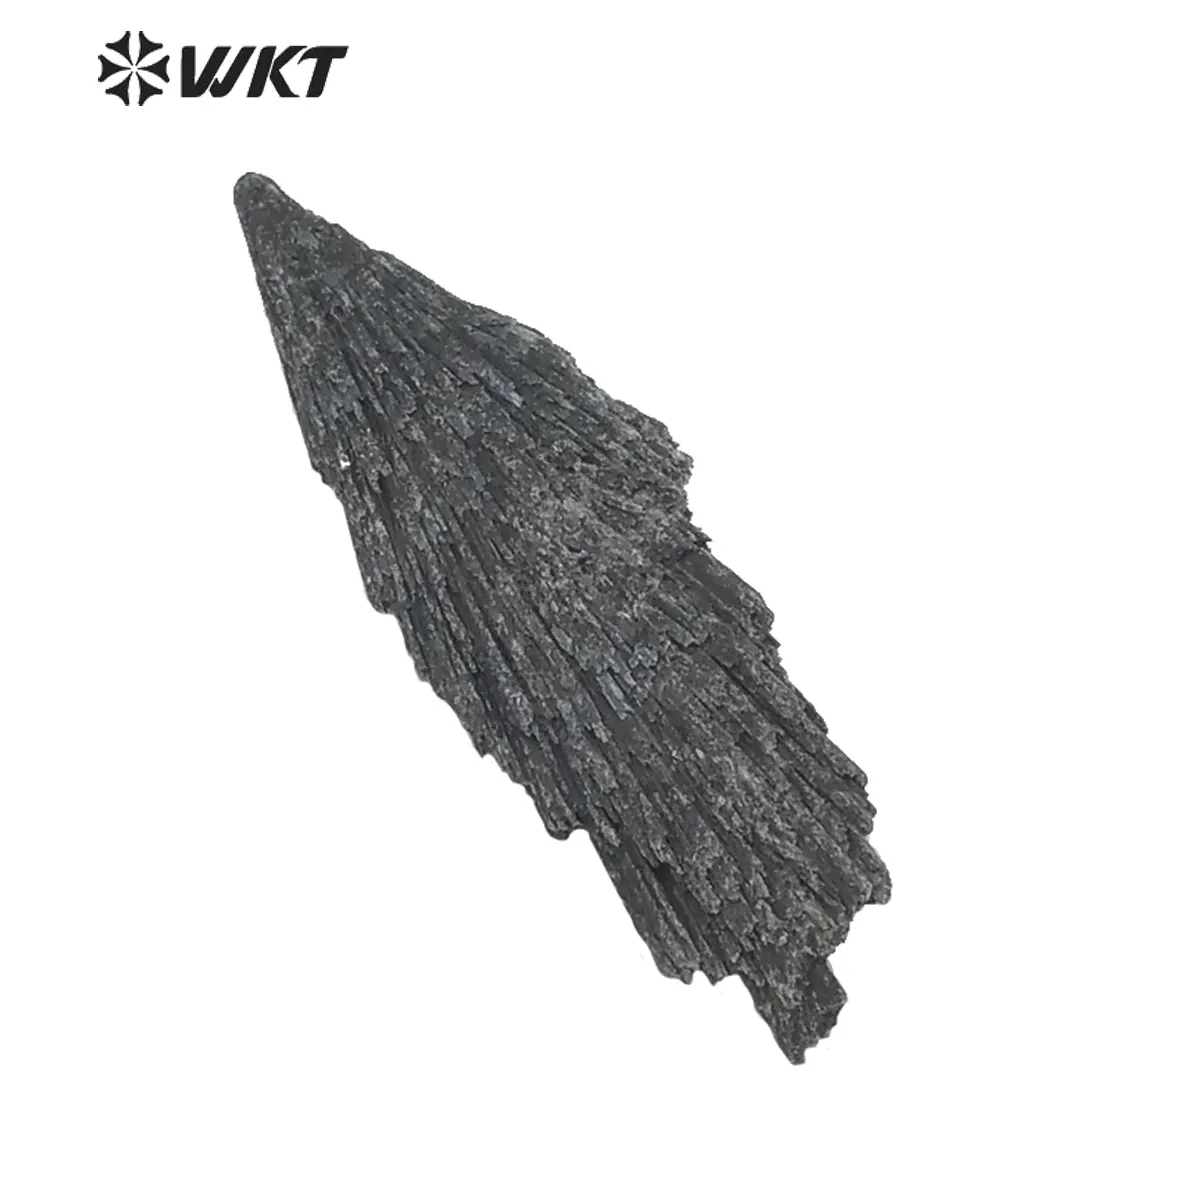 WT-G152 En Gros Noir Kyanite Cristal, Pierres Précieuses Minéral Naturel De Guérison Reiki noir Kyanite pierre